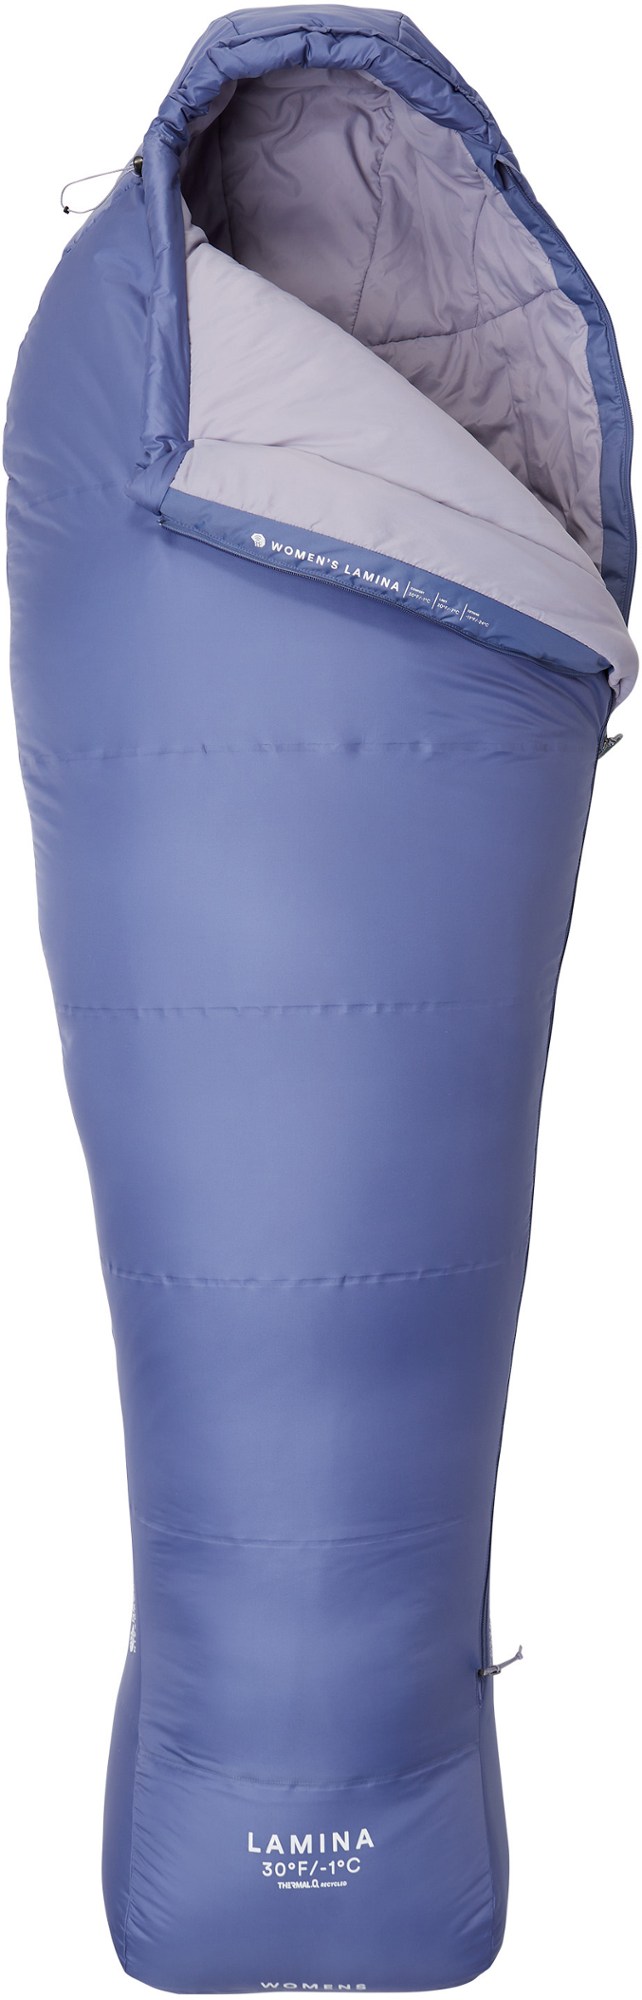 Спальный мешок Lamina 30 — женский длинный Mountain Hardwear, синий